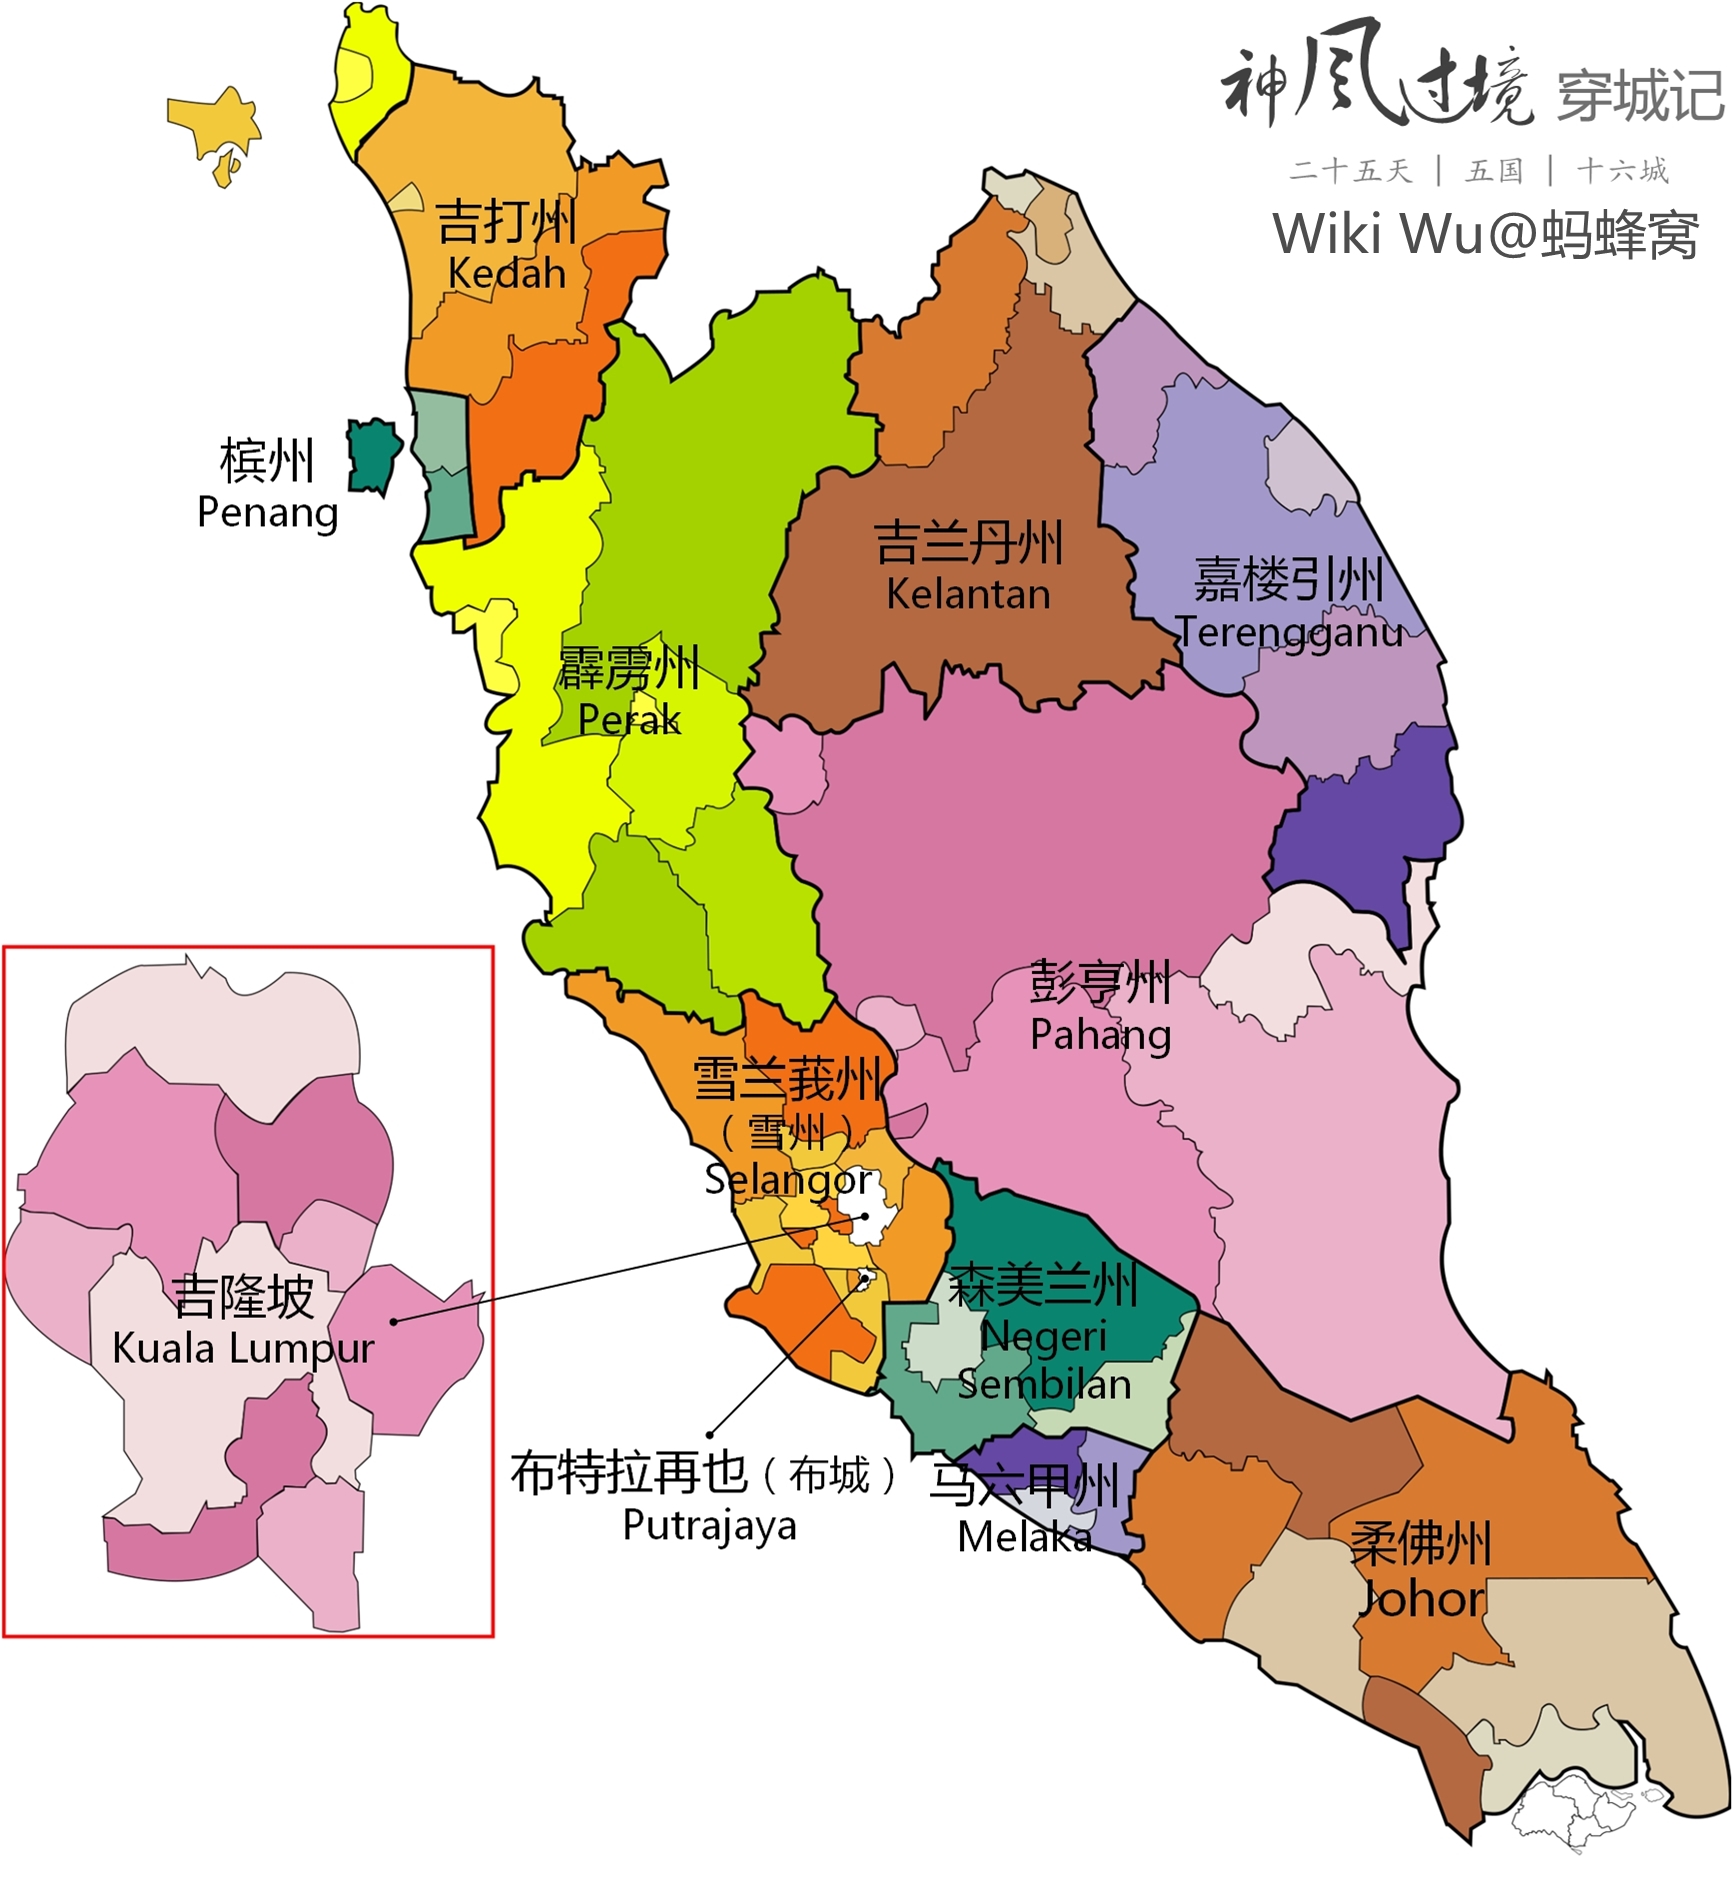 吉隆坡地图高清 大家的日本语